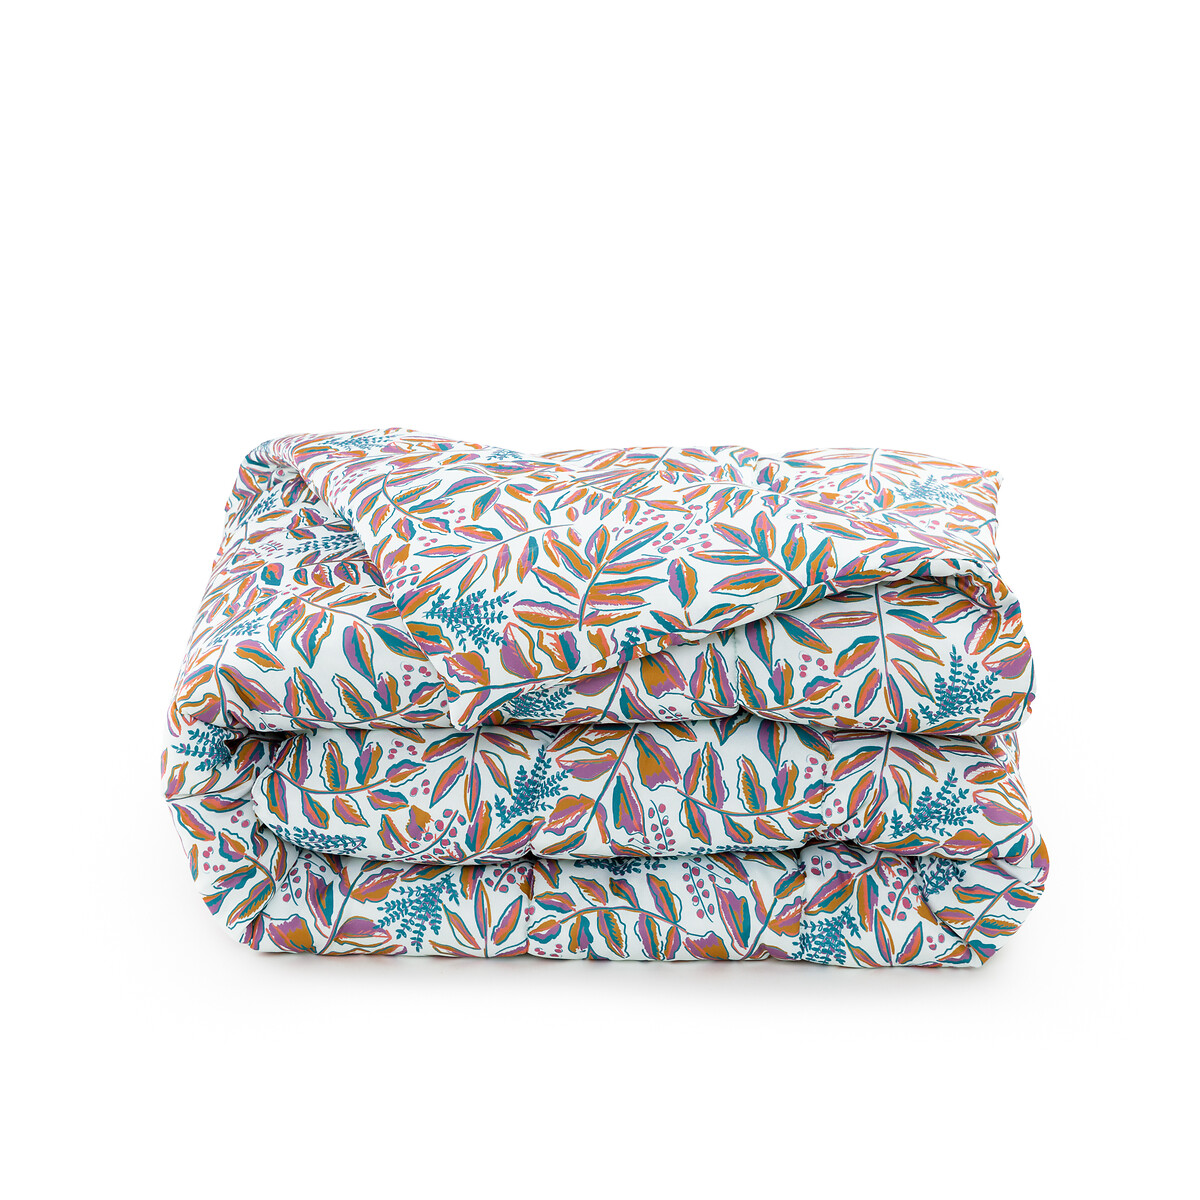 Одеяло из переработанной микрофибры с принтом Barbora  240 x 220 см каштановый LaRedoute, размер 240 x 220 см - фото 5